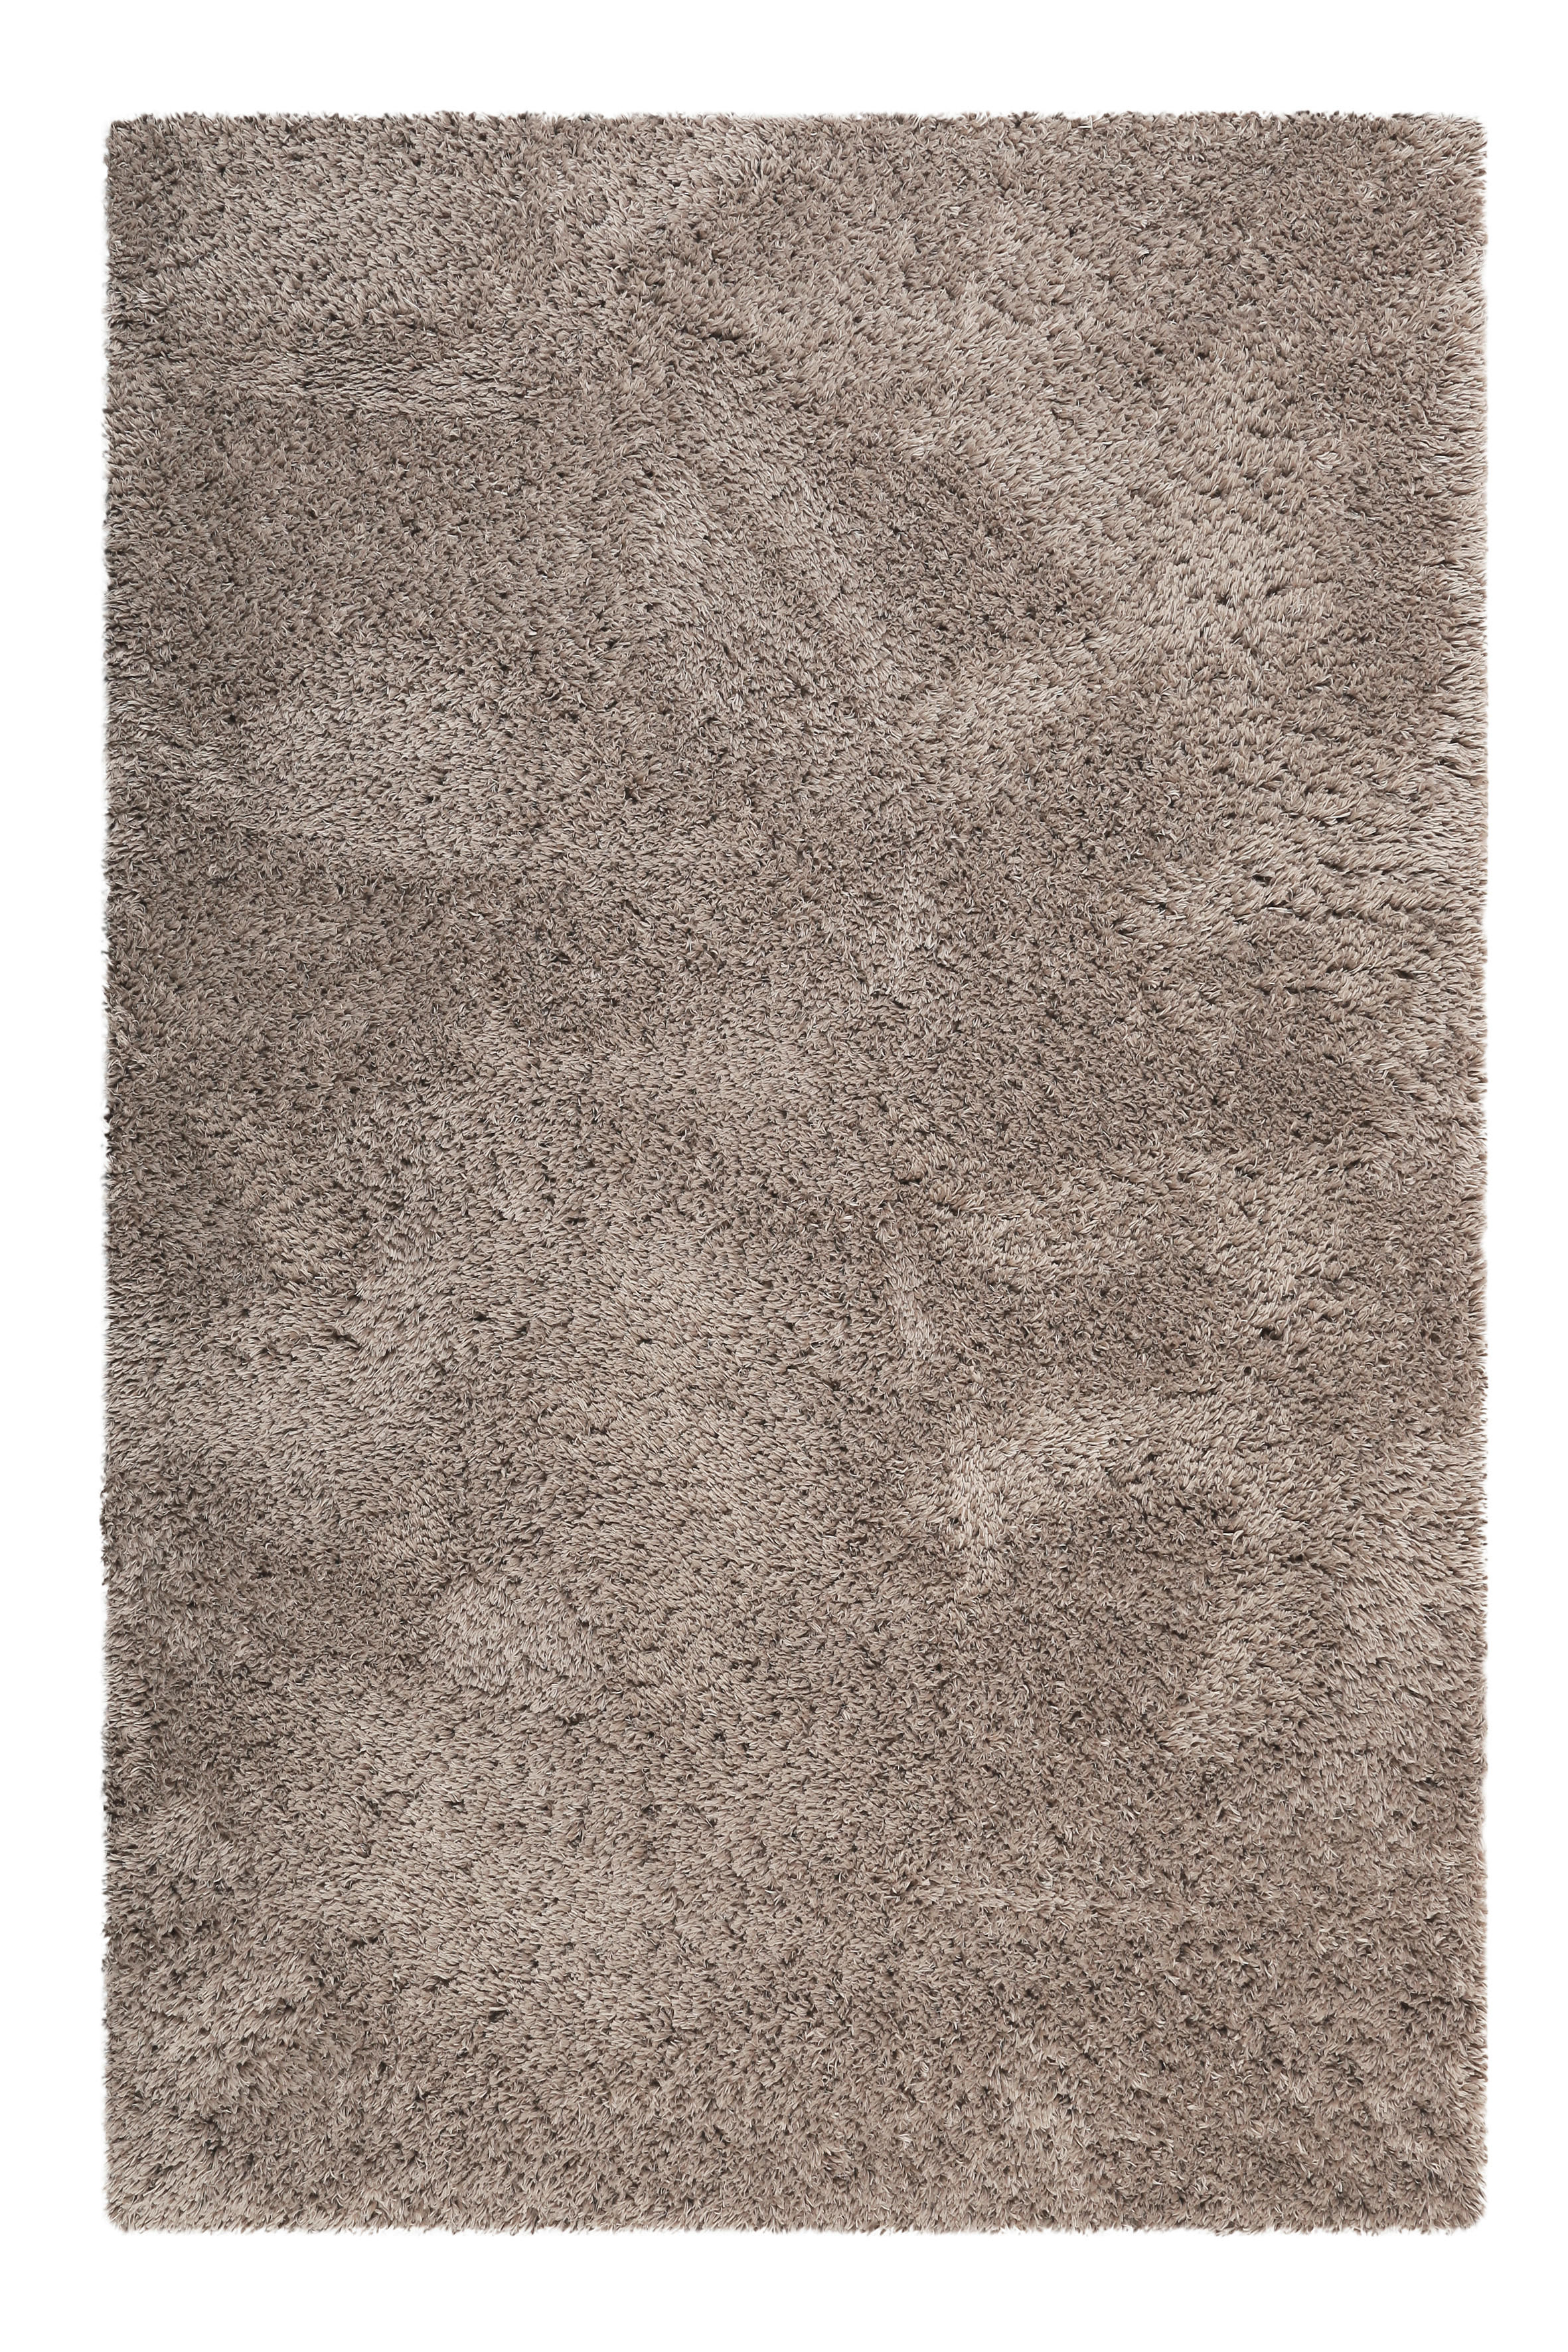 HOCHFLORTEPPICH  200/290 cm  gewebt  Sandfarben   - Sandfarben, KONVENTIONELL, Textil (200/290cm) - Esprit